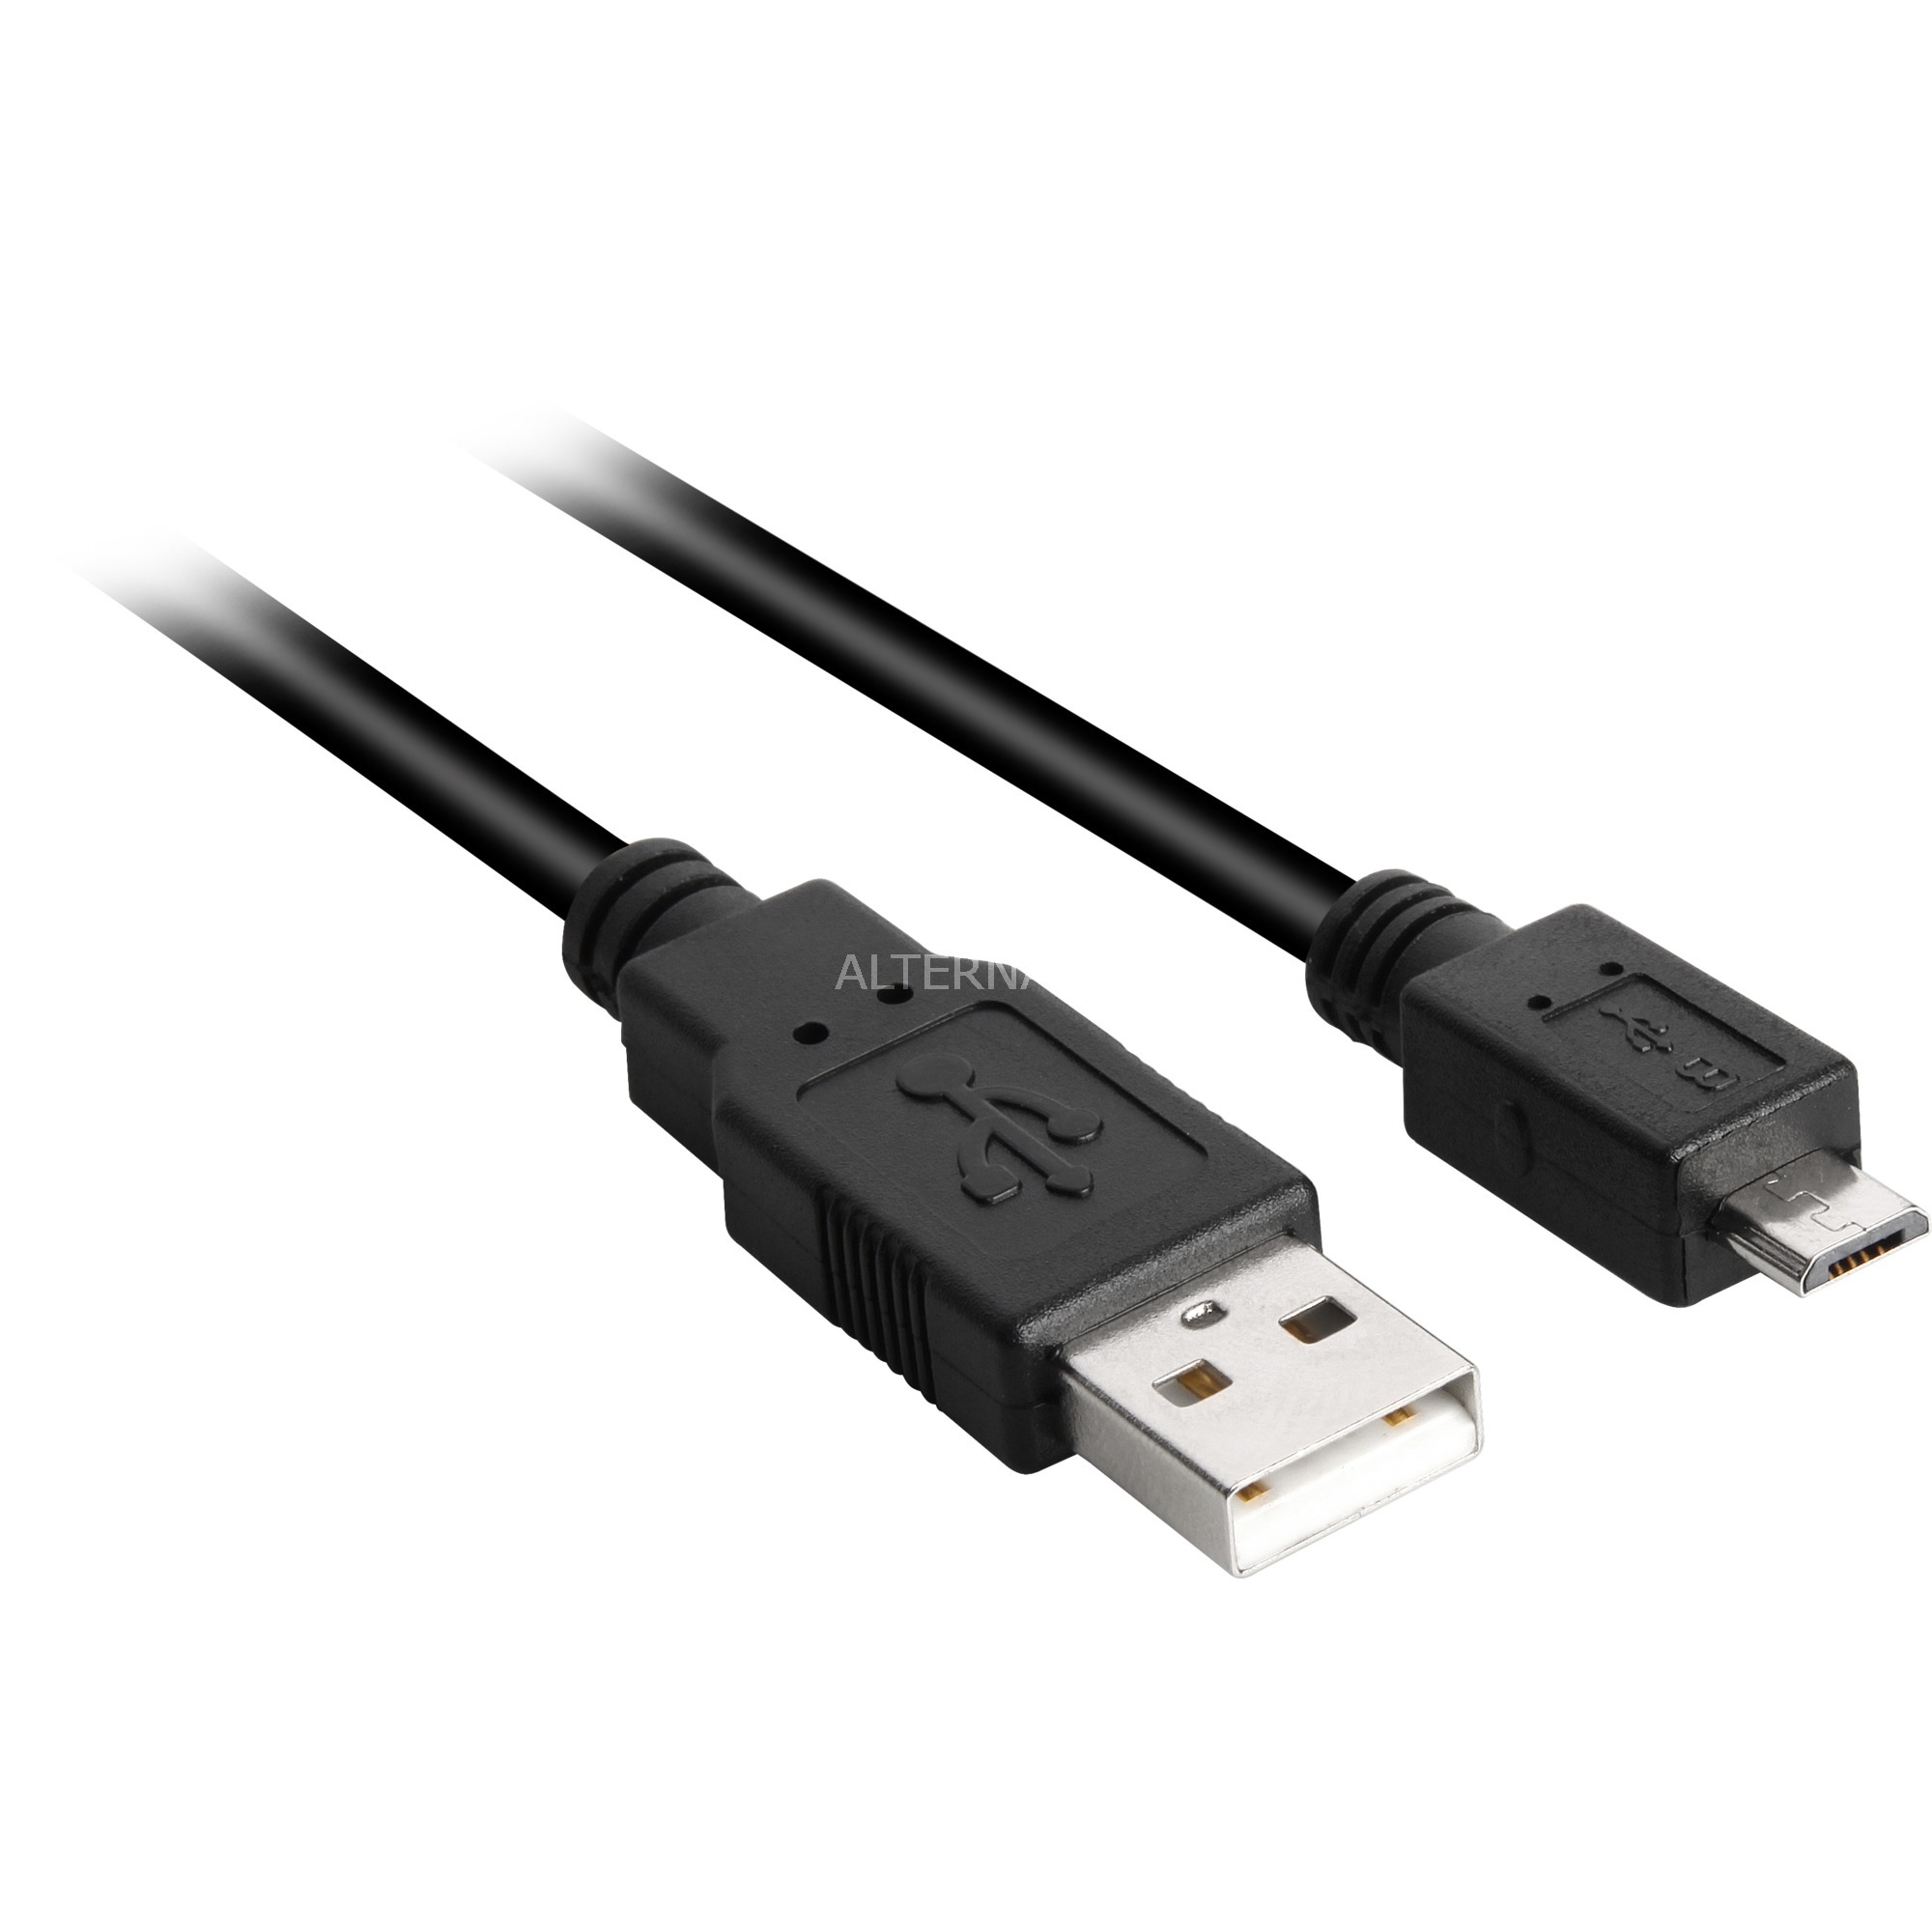 Image of Alternate - Kabel USB 2.0 Stecker A > Stecker B Micro online einkaufen bei Alternate